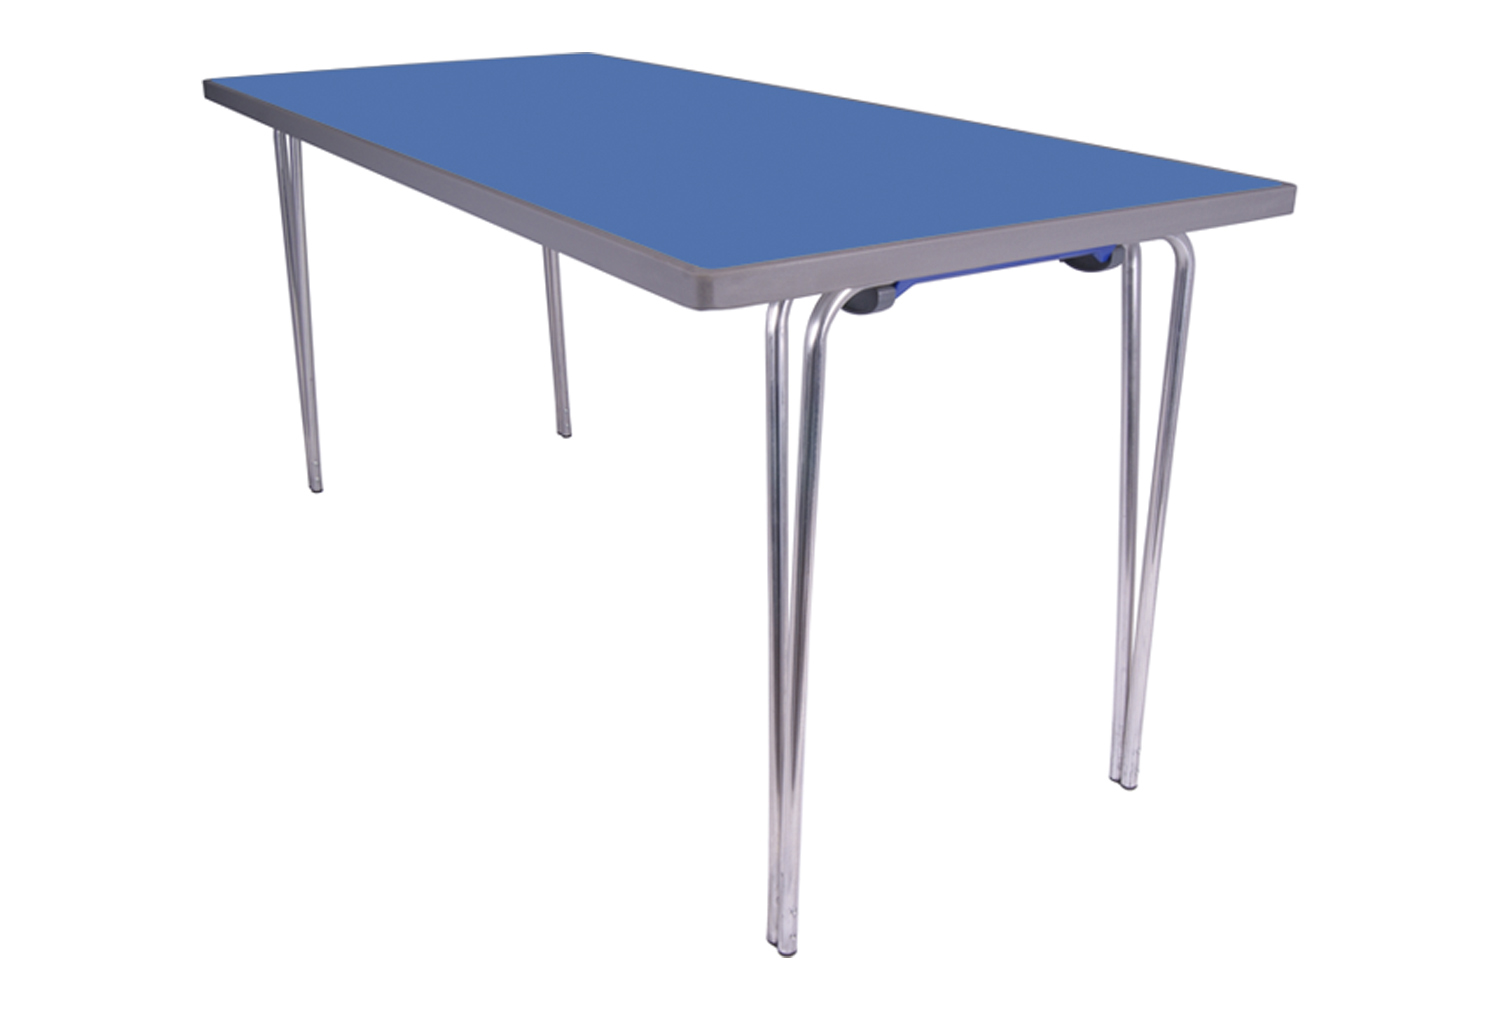 Gopak Premier Folding Table, 122wx69d (cm), Azure Blue